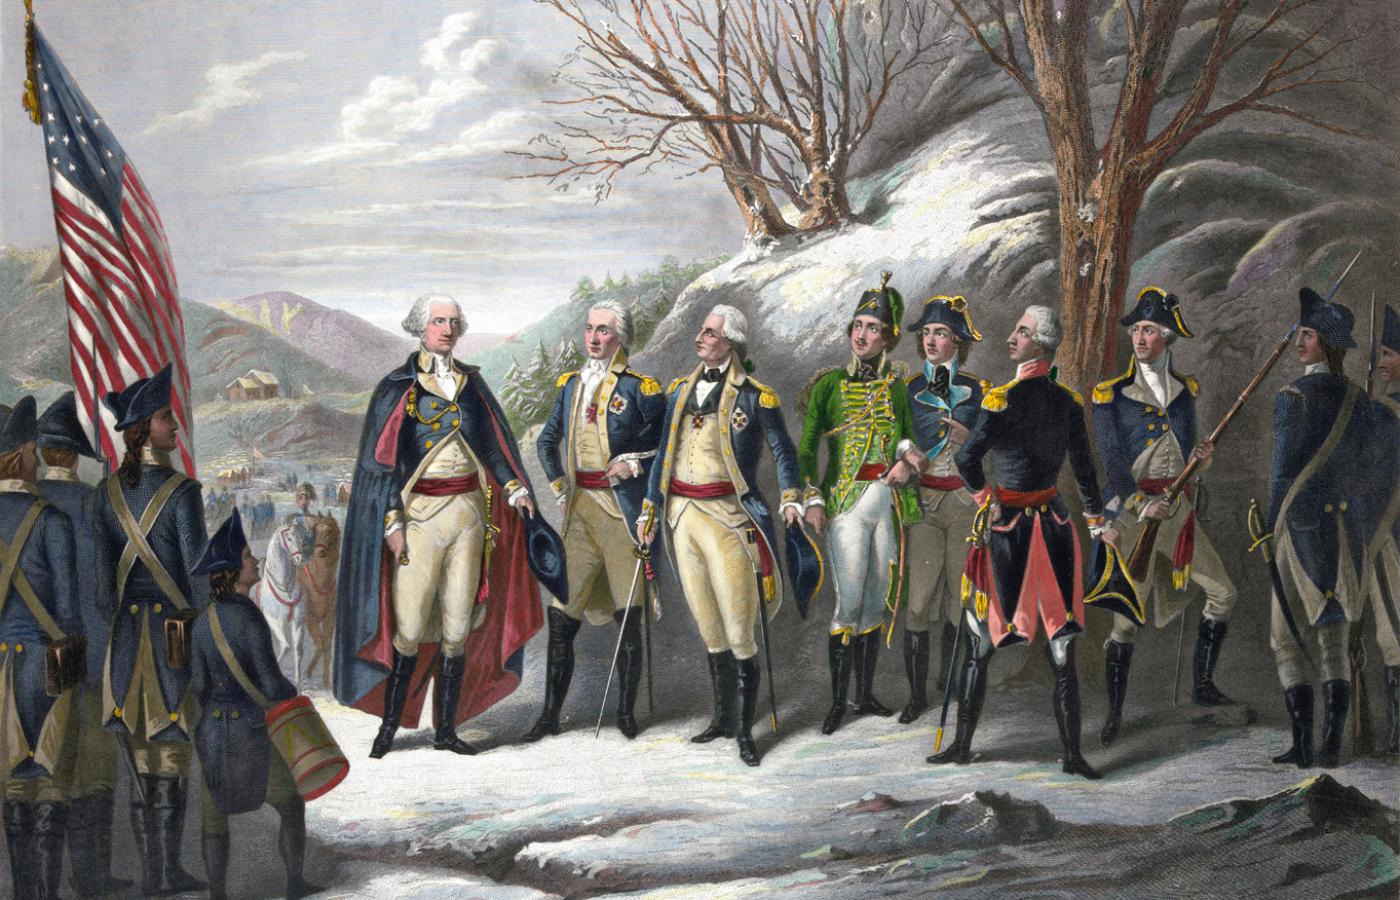 Bohaterowie rewolucji: pierwszy z lewej George Washington, trzeci - pruski baron von Steuben, następnie Kazimierz Pułaski i Tadeusz Kościuszko oraz francuski markiz de Lafayette, staloryt z XIX w.